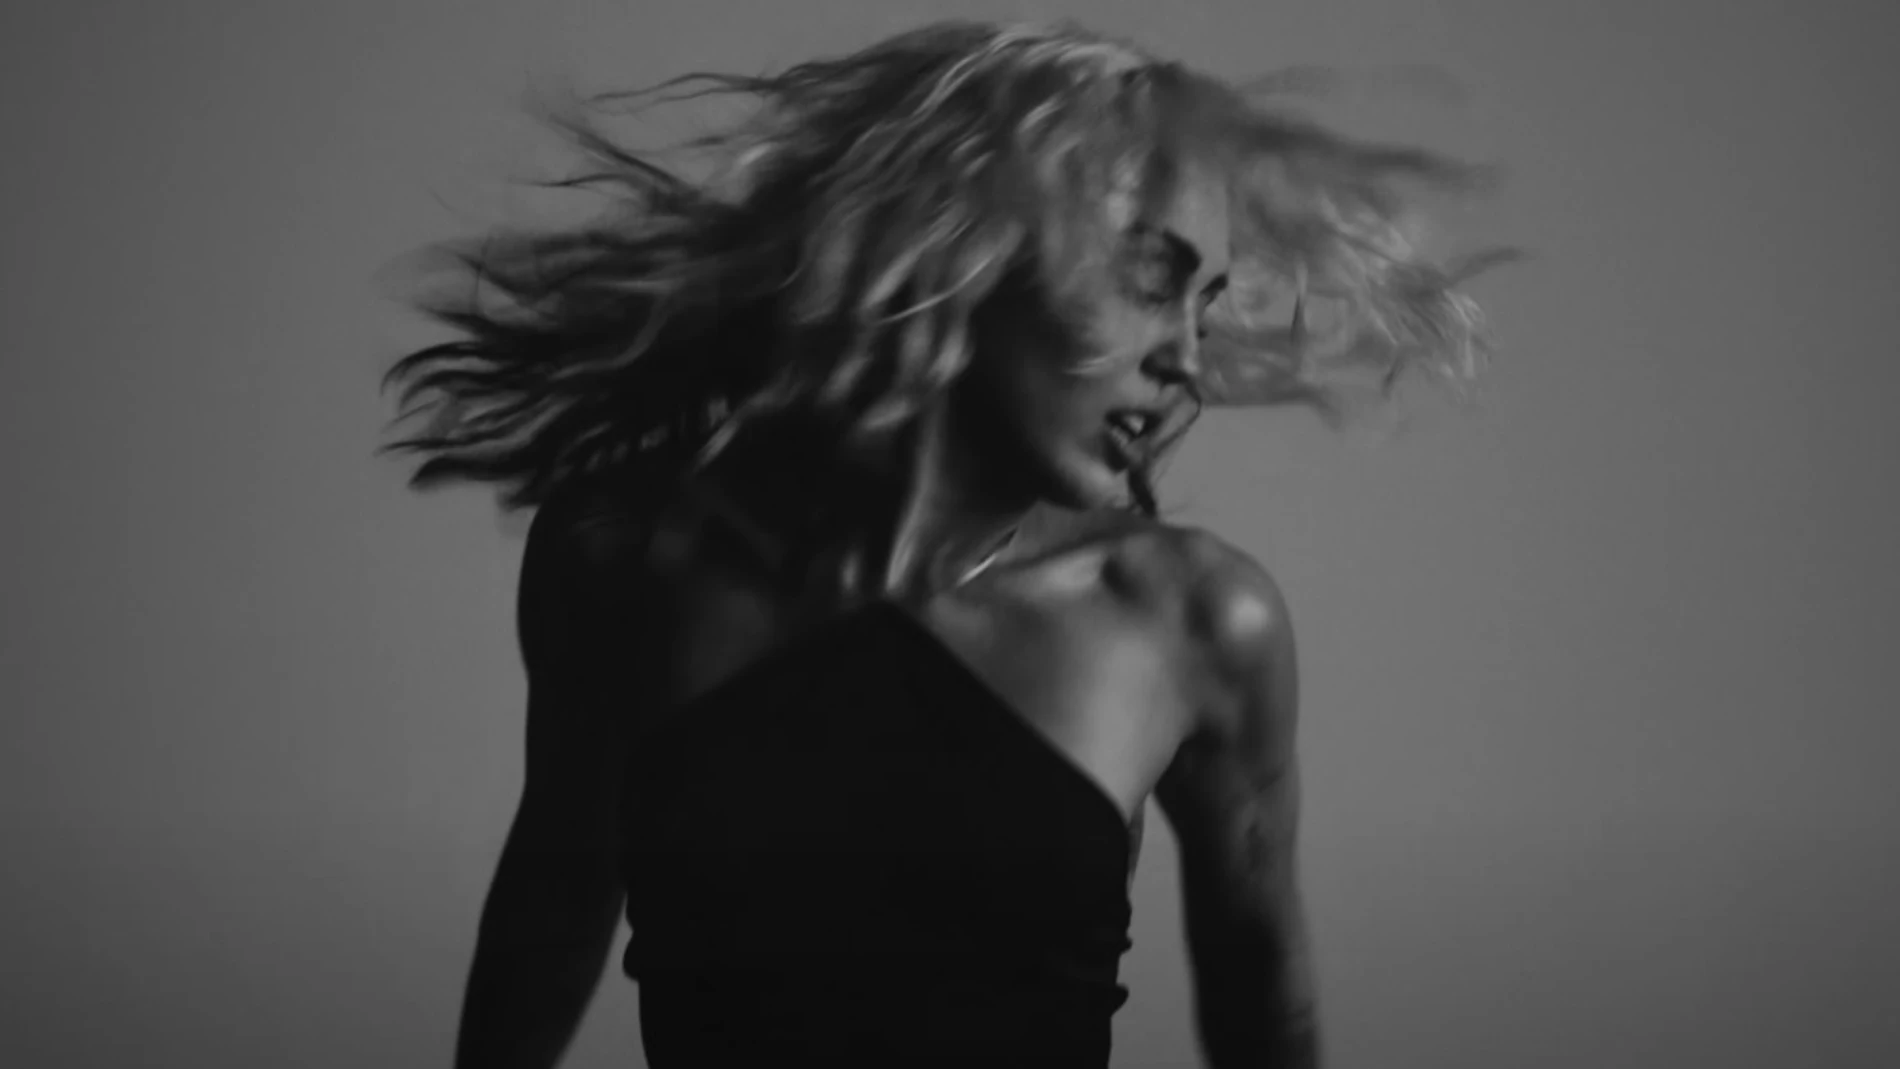 El despertar sexual de Miley Cyrus en el videoclip de River